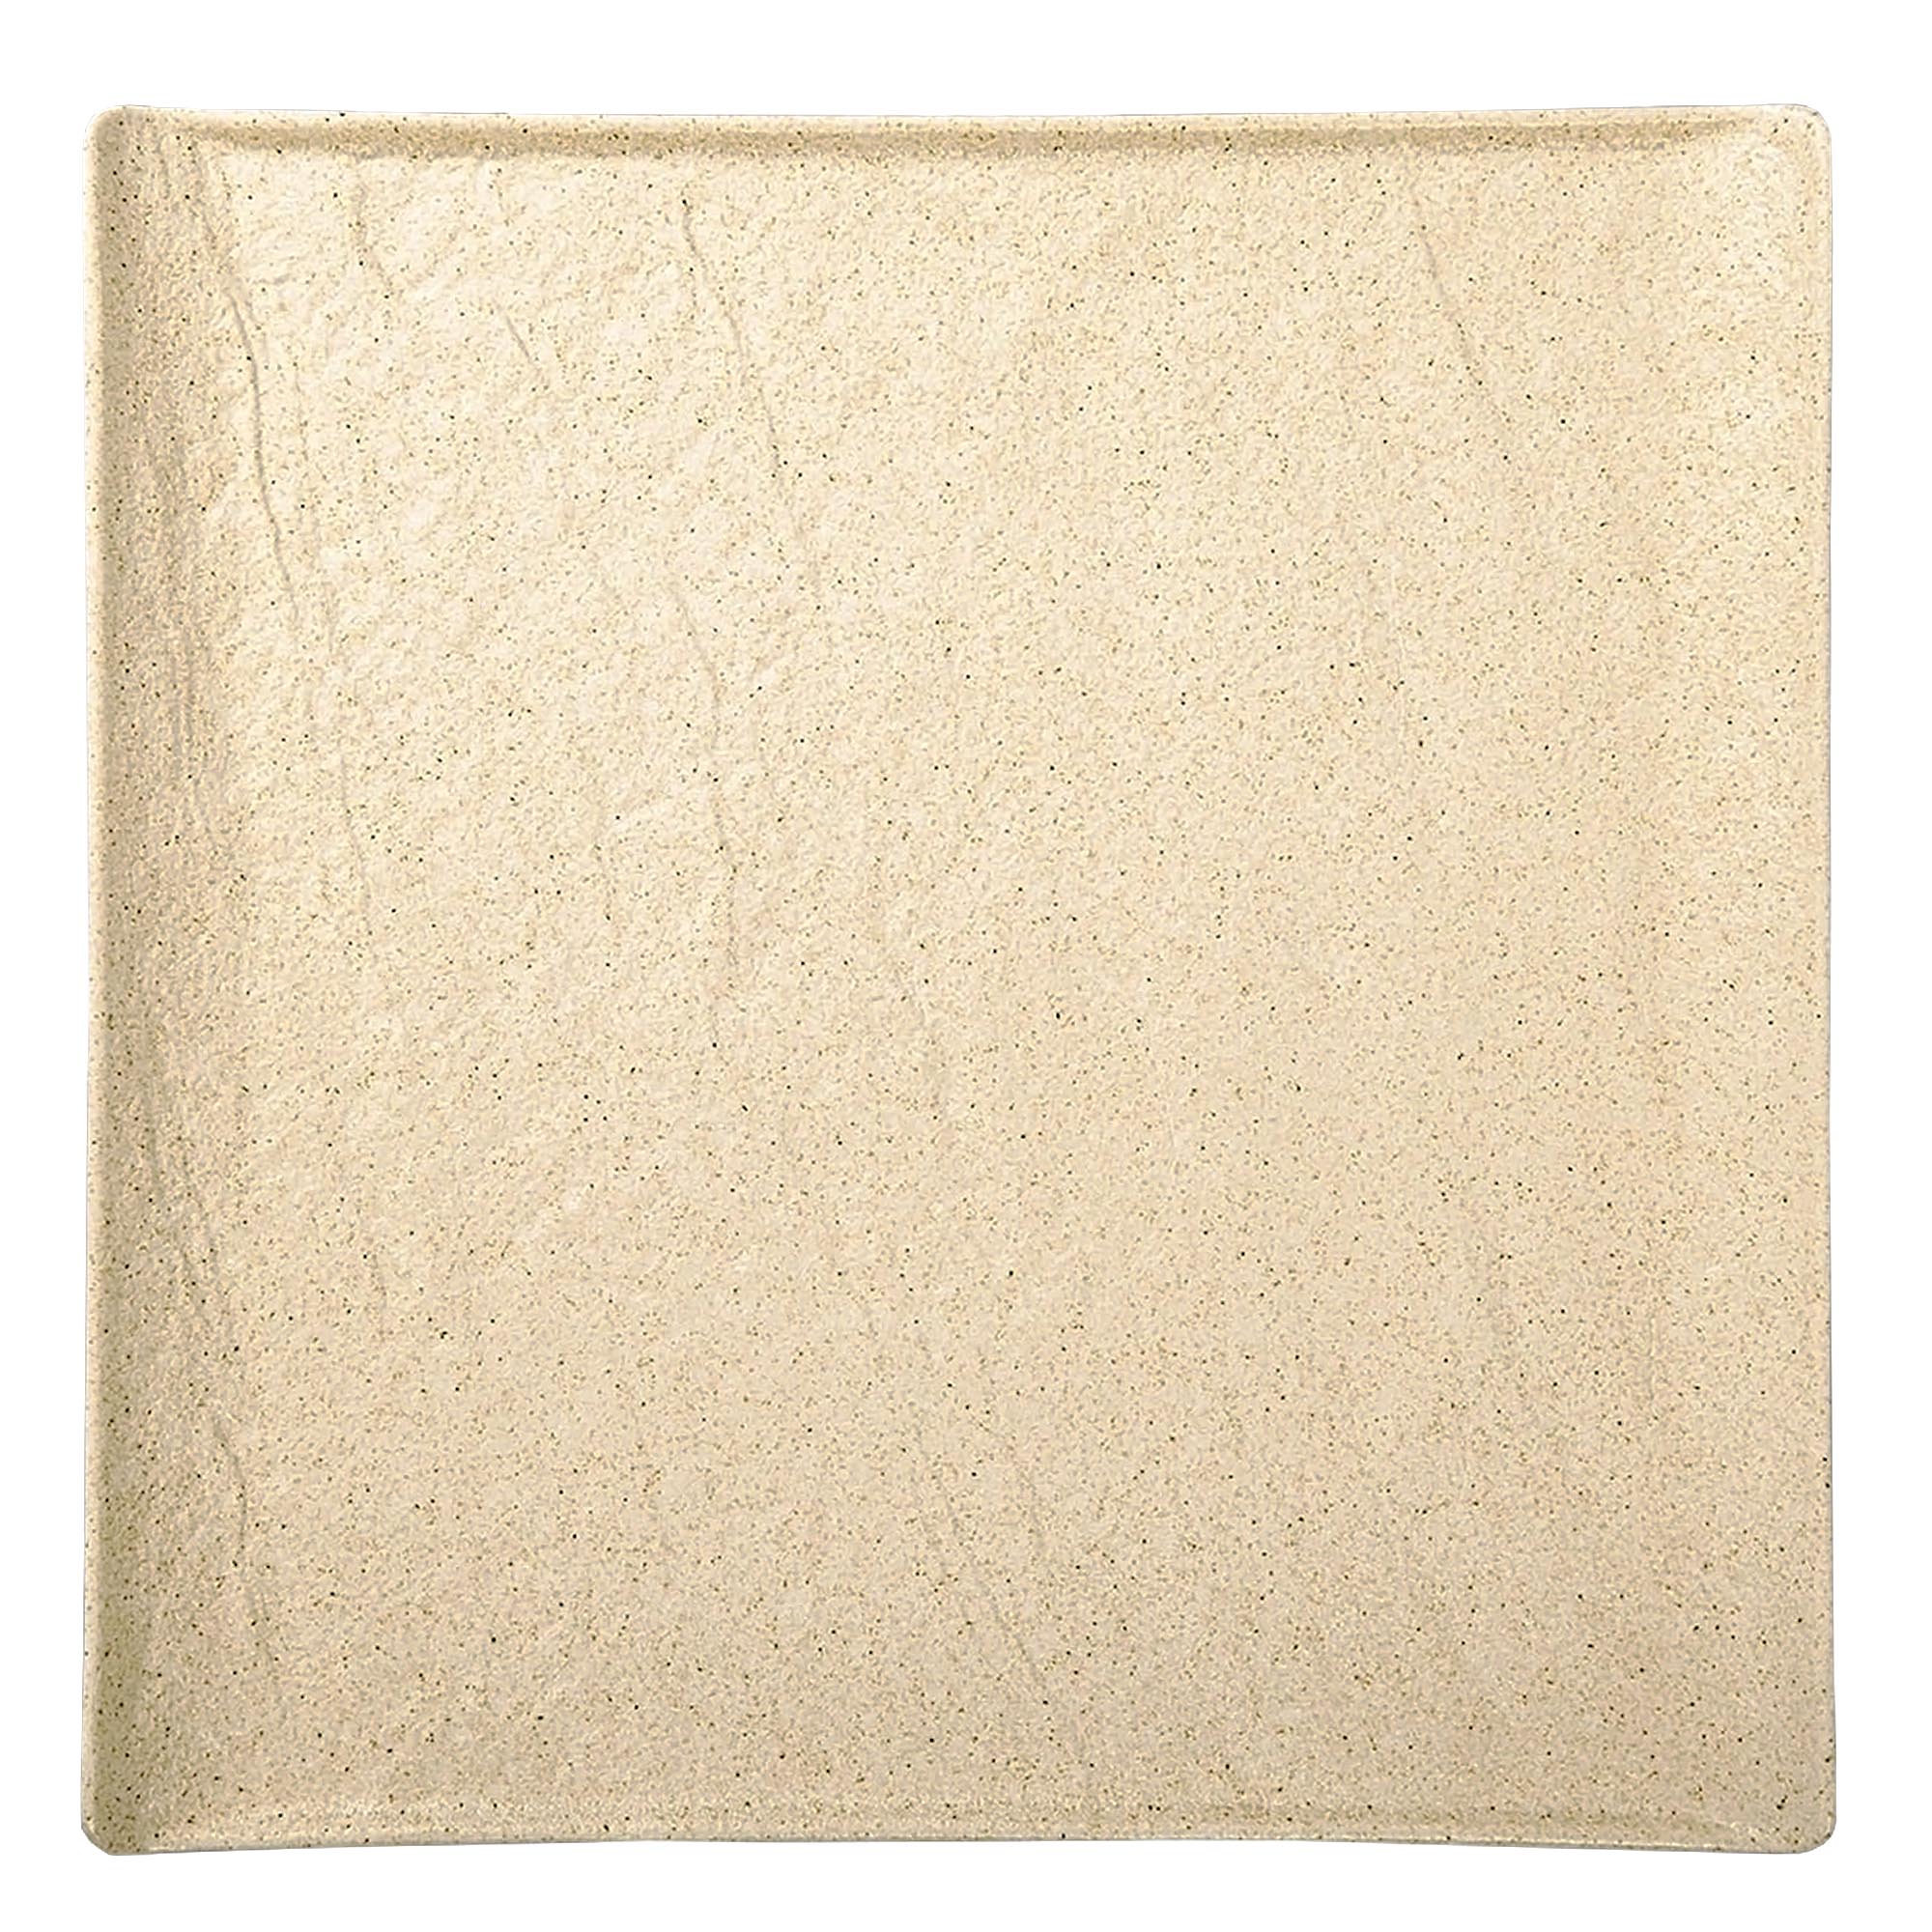 Тарелка квадратная Wilmax SandStone фарфор 17х17 см тарелка квадратная wilmax sandstone фарфор 17х17 см